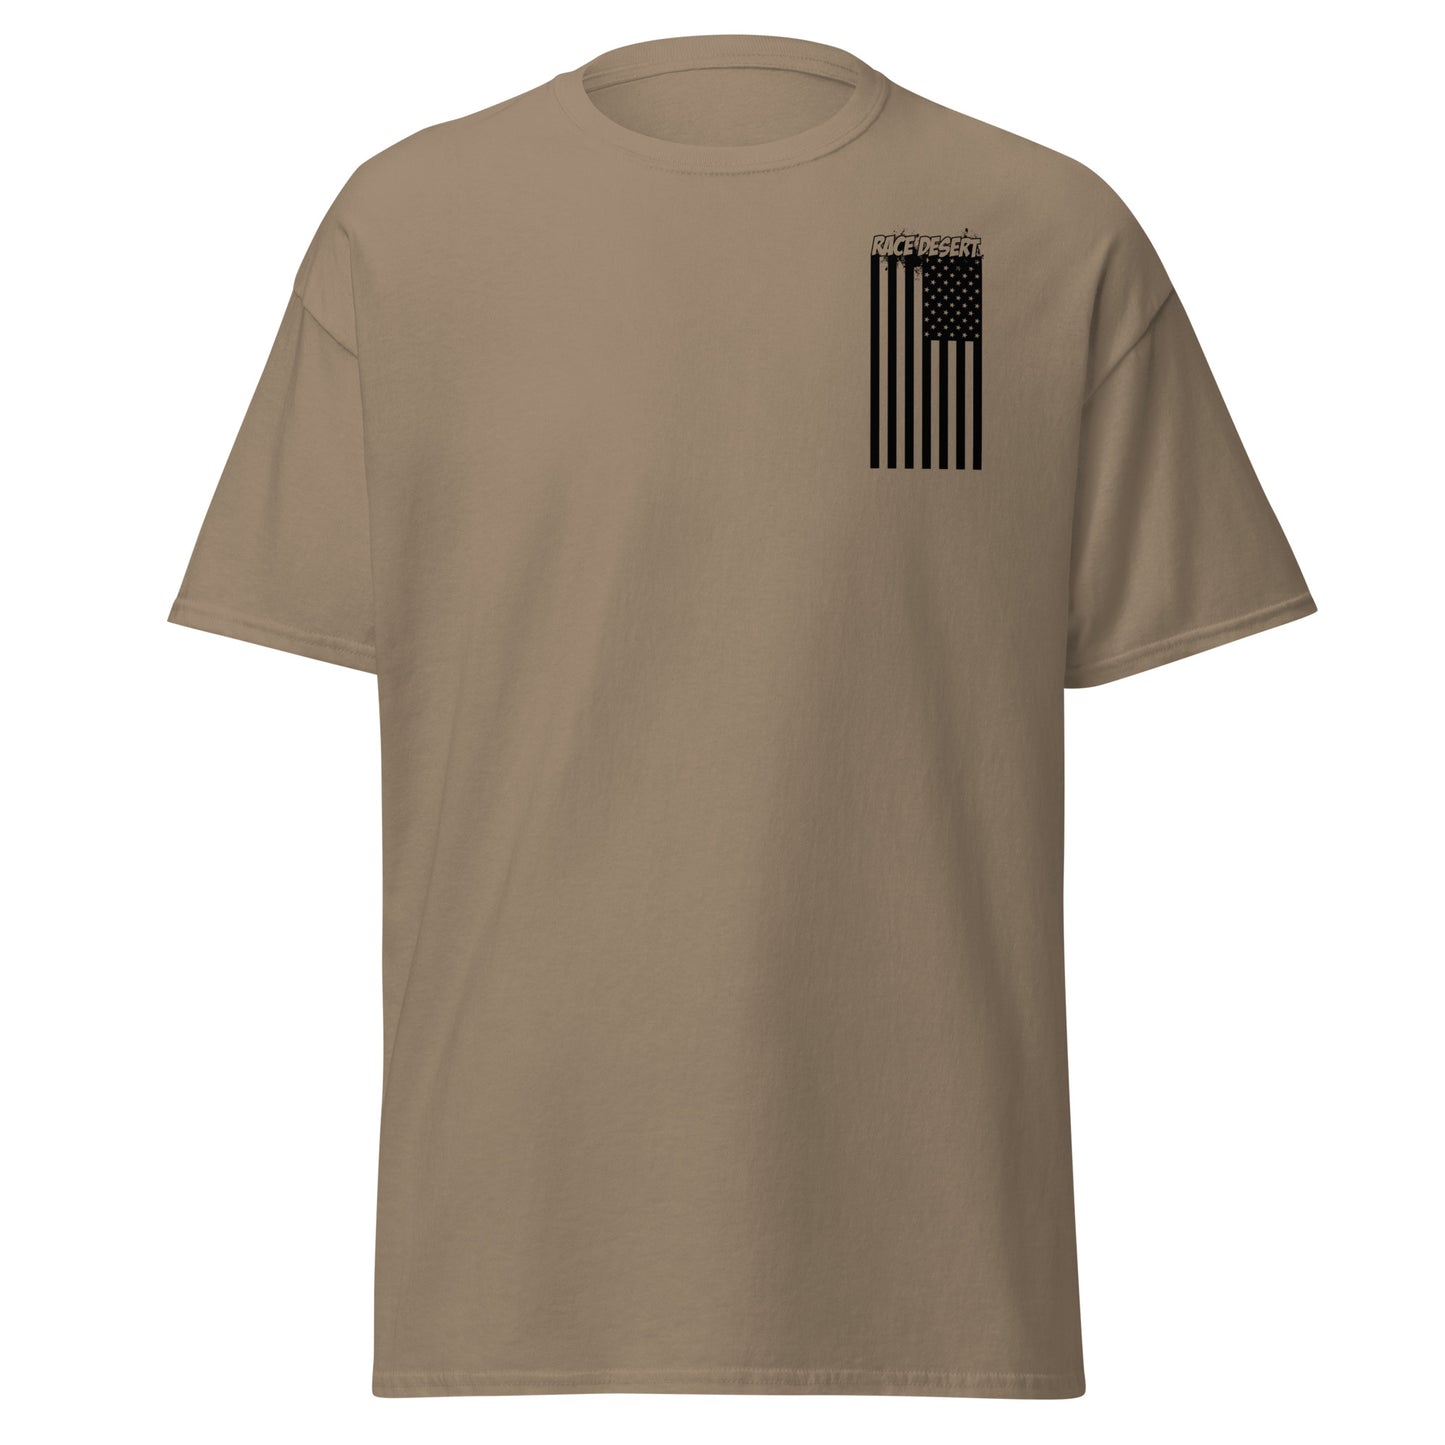 Mens Desert Nation T-Shirt - Dark Tan